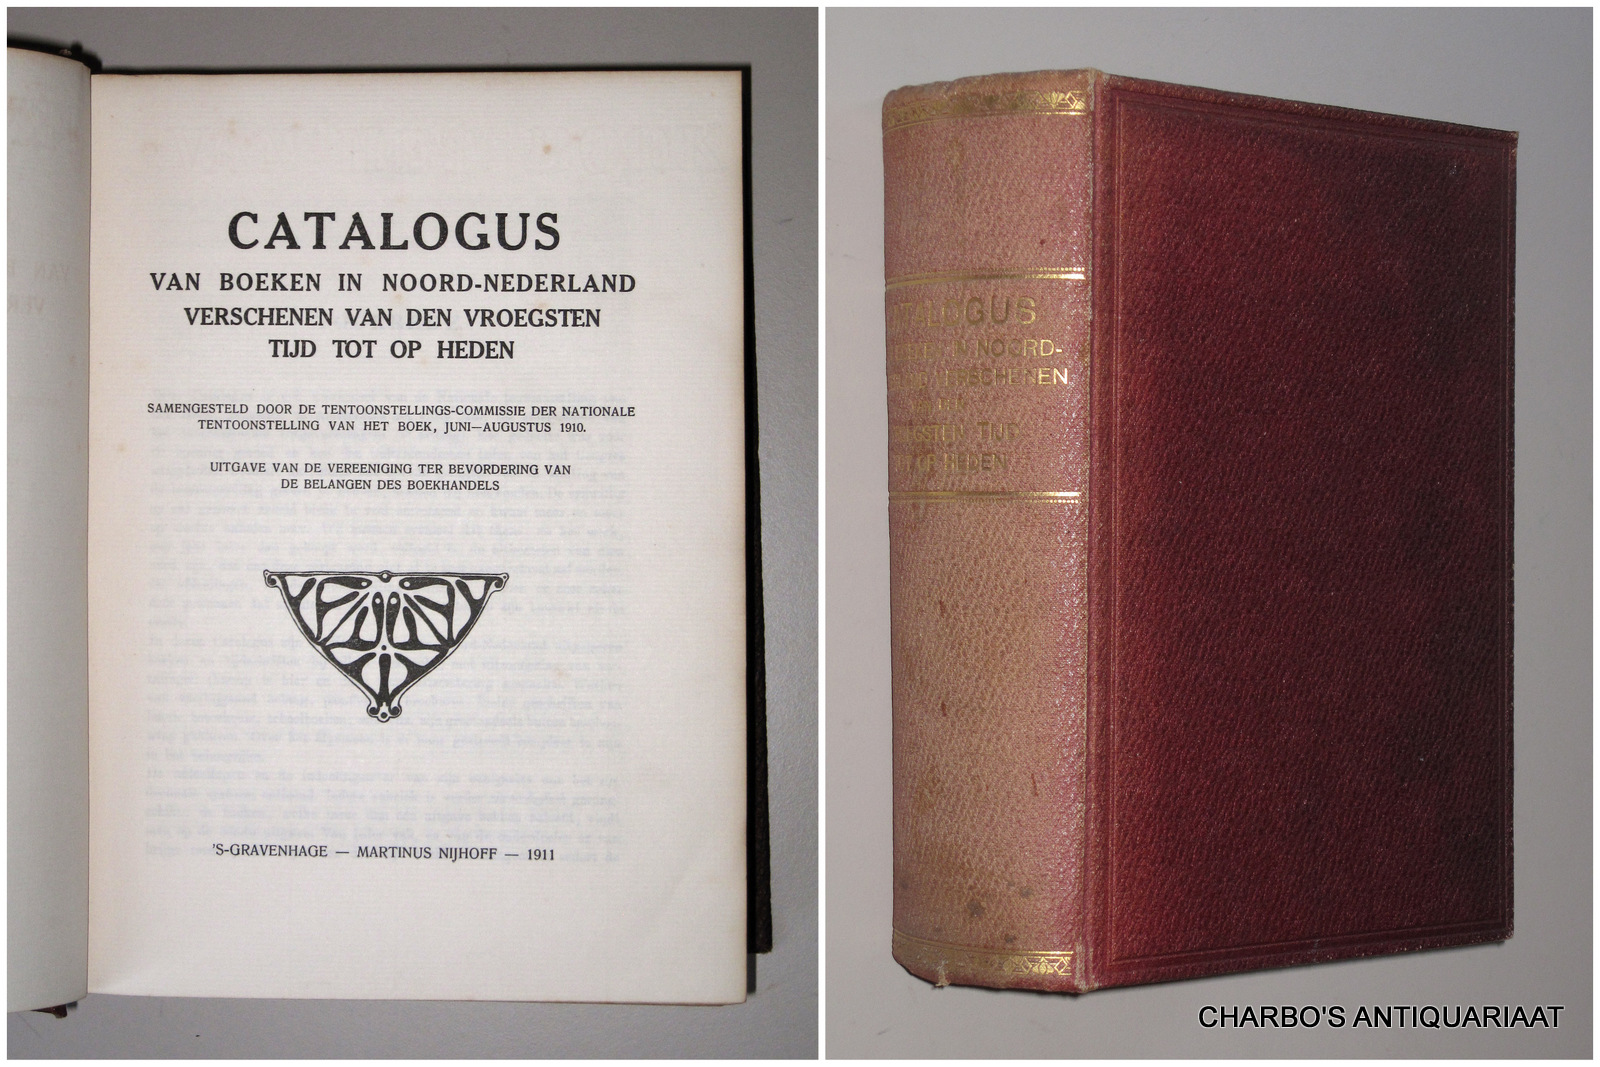 CATALOGUS. -  Catalogus van boeken in Noord-Nederland verschenen van den vroegsten tijd tot op heden. Samengesteld door de Tentoonstellings-commissie der Nationale Tentoonstelling van het Boek, Juni-Aug.1910.